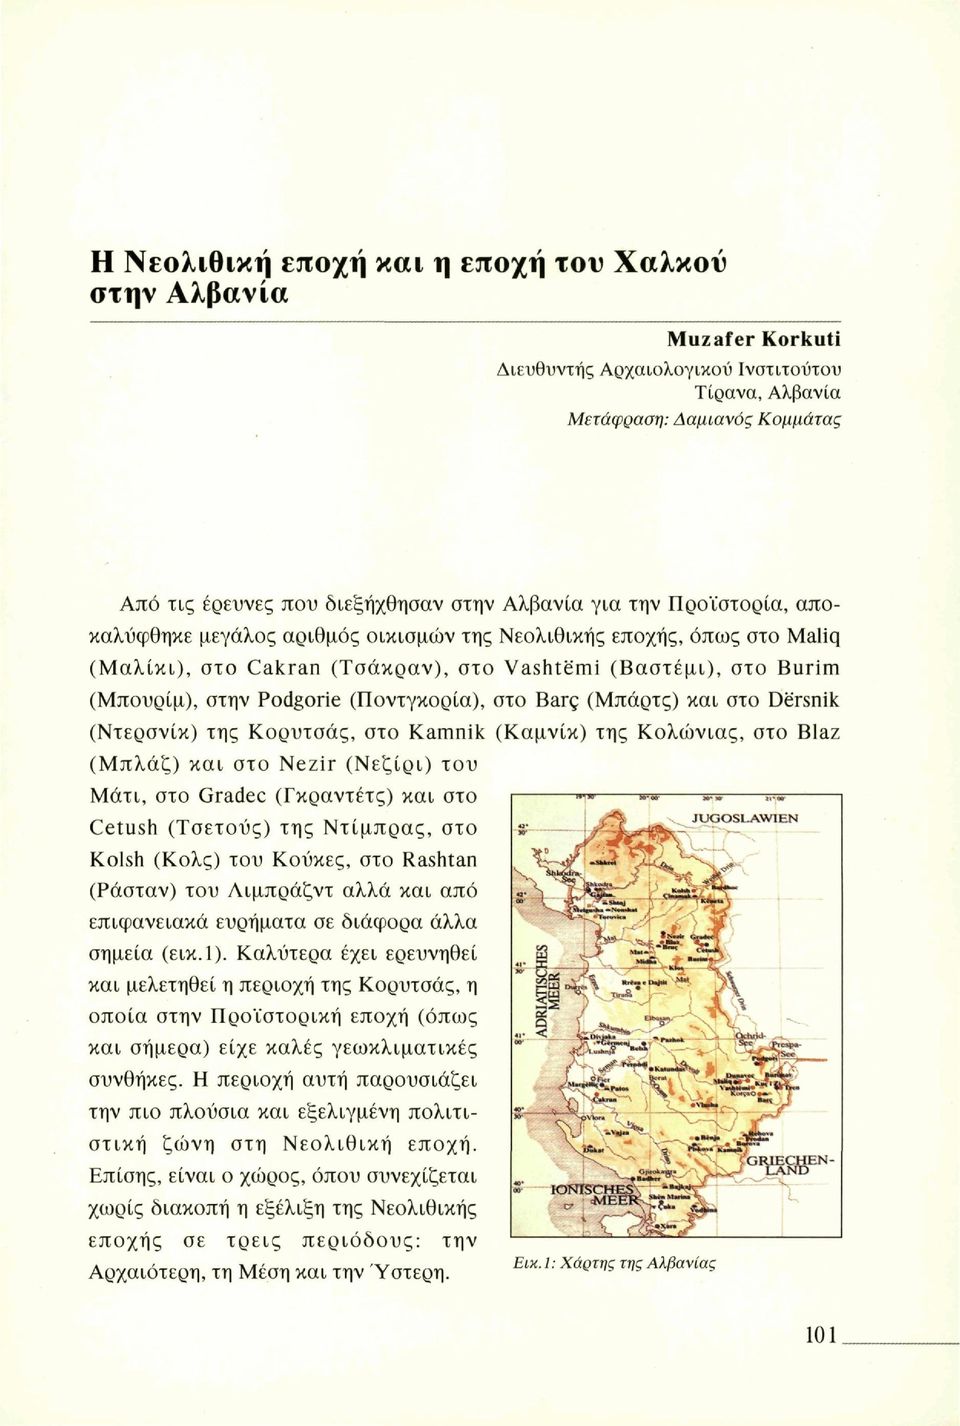 (Ποντγκορία), στο Barç (Μπάρτς) και στο Dërsnik (Ντερσνίκ) της Κορυτσάς, στο Kamnik (Καμνίκ) της Κολωνίας, στο Blaz (Μπλάζ) και στο Nezir (Νεζίρι) του Μάτι, στο Gradée (Γκραντέτς) και στο Cetush